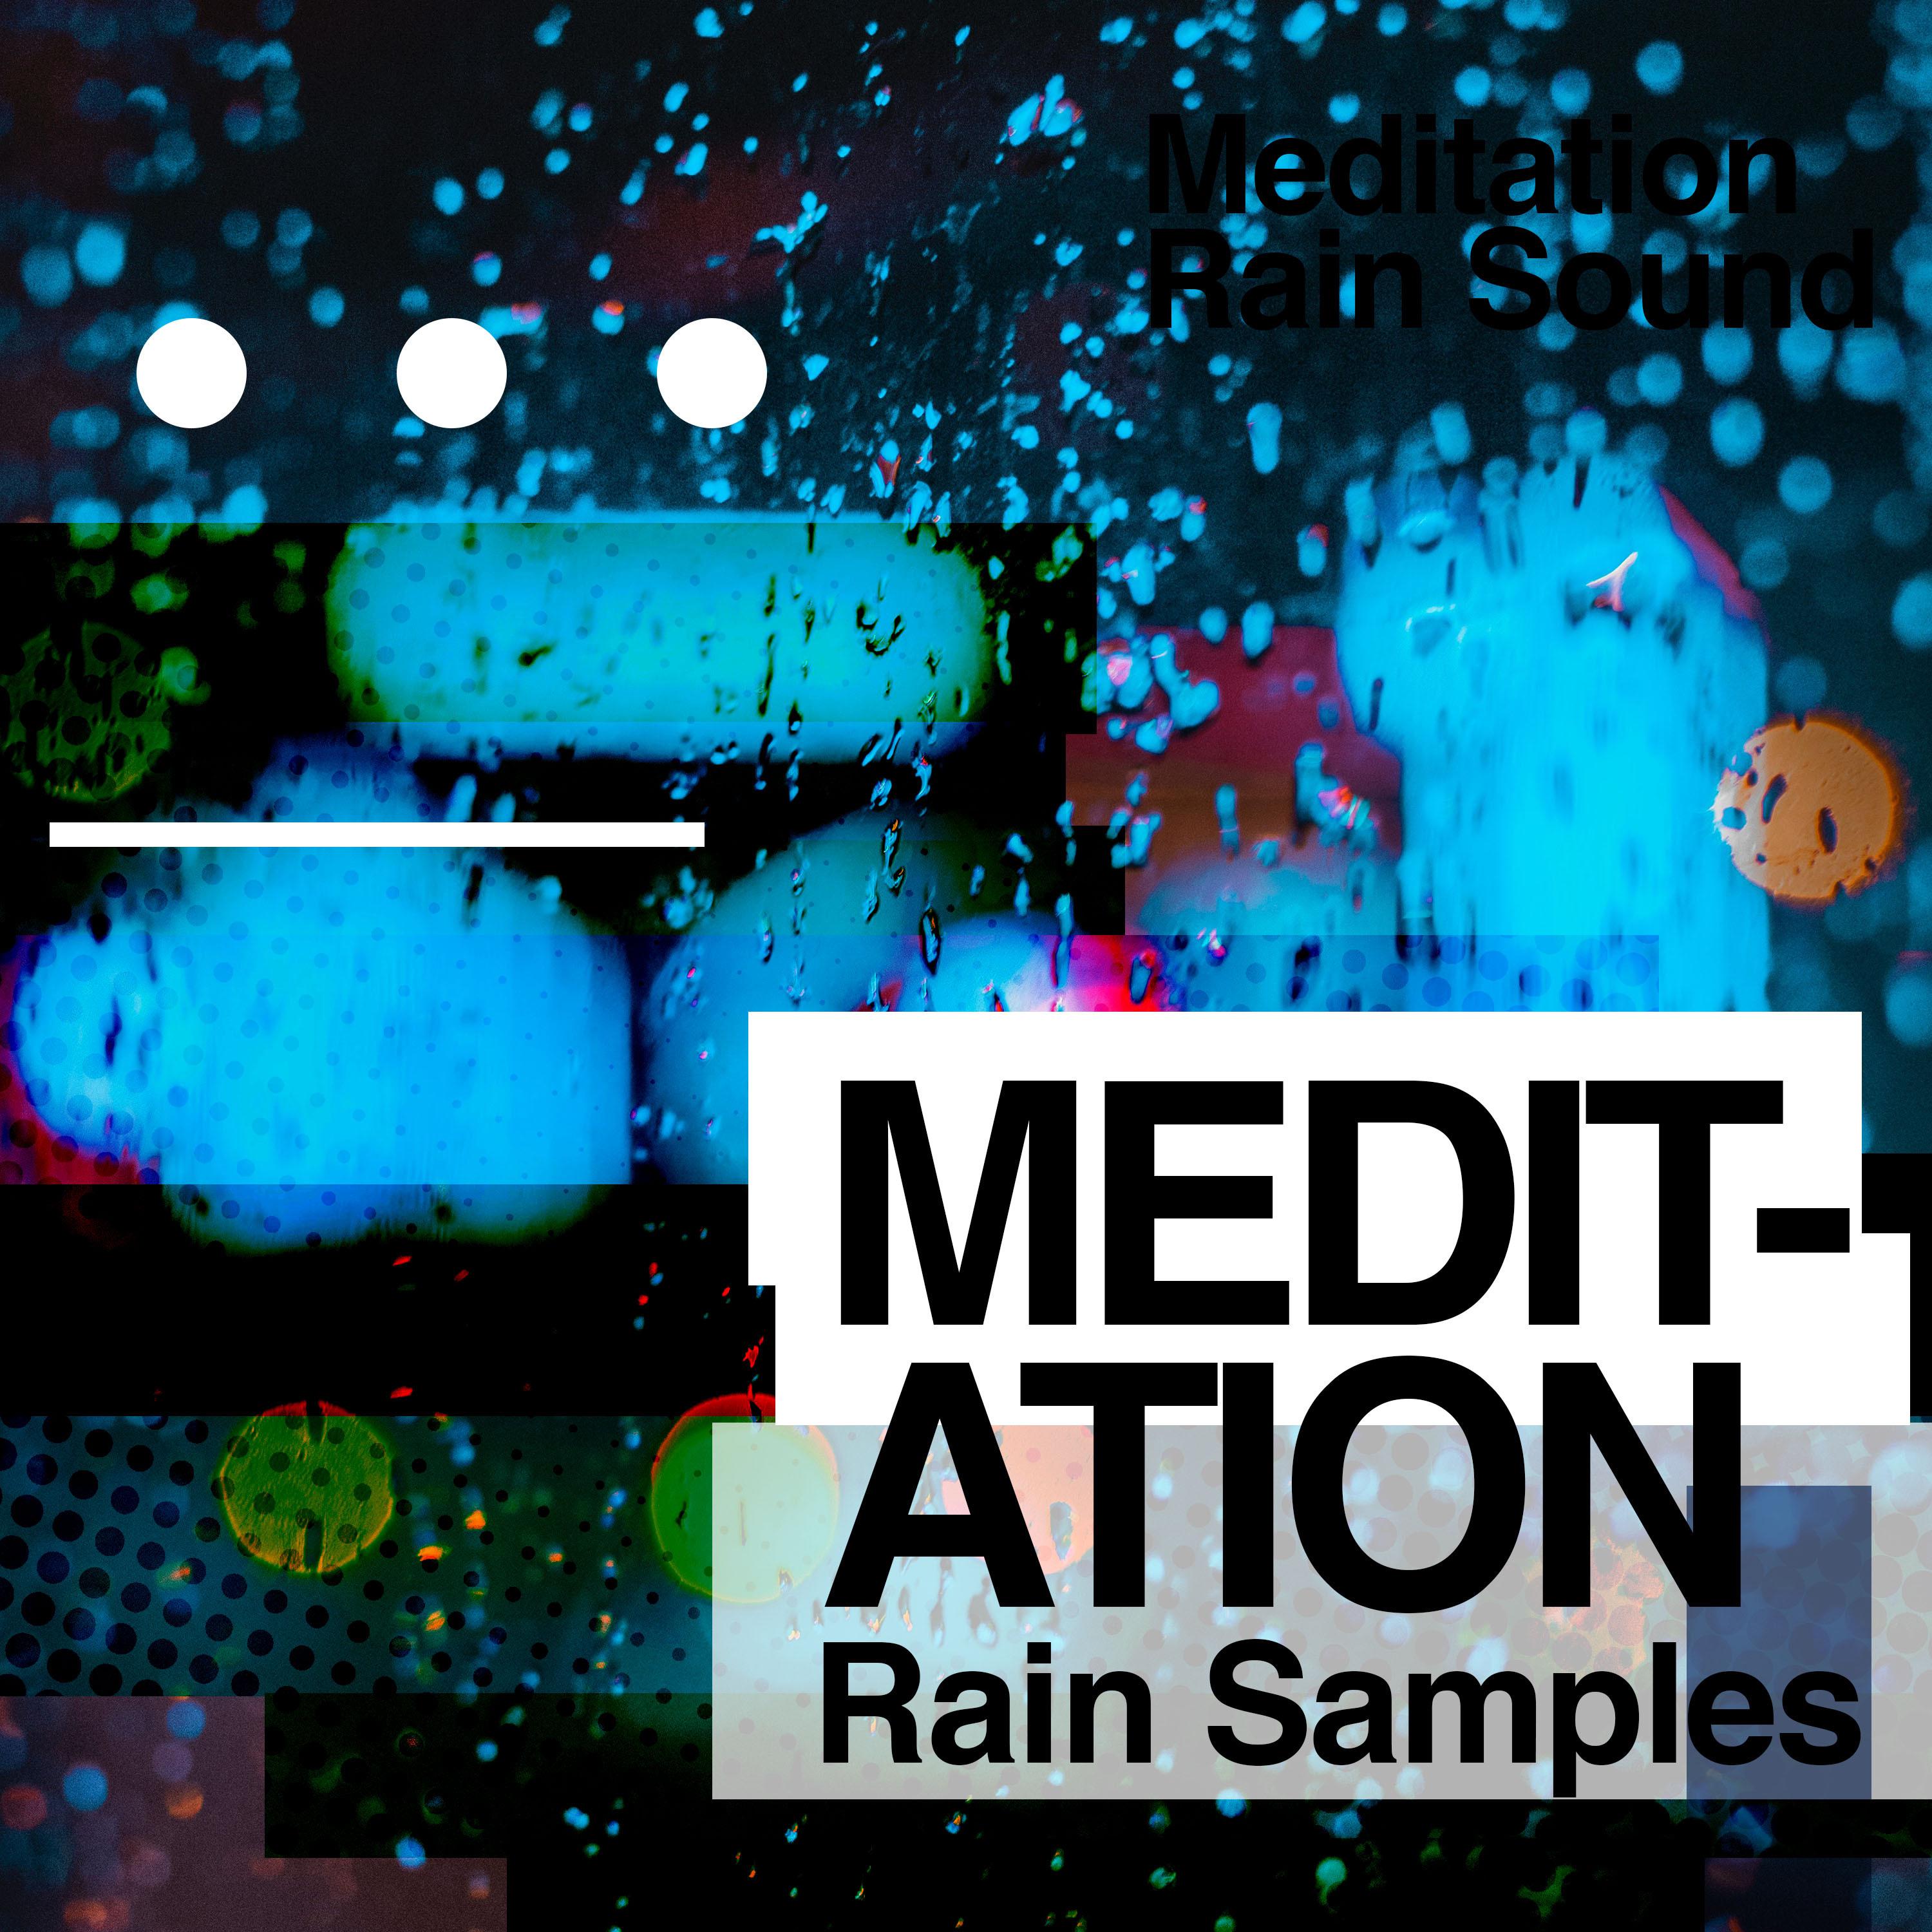 Meditation Rain Samples